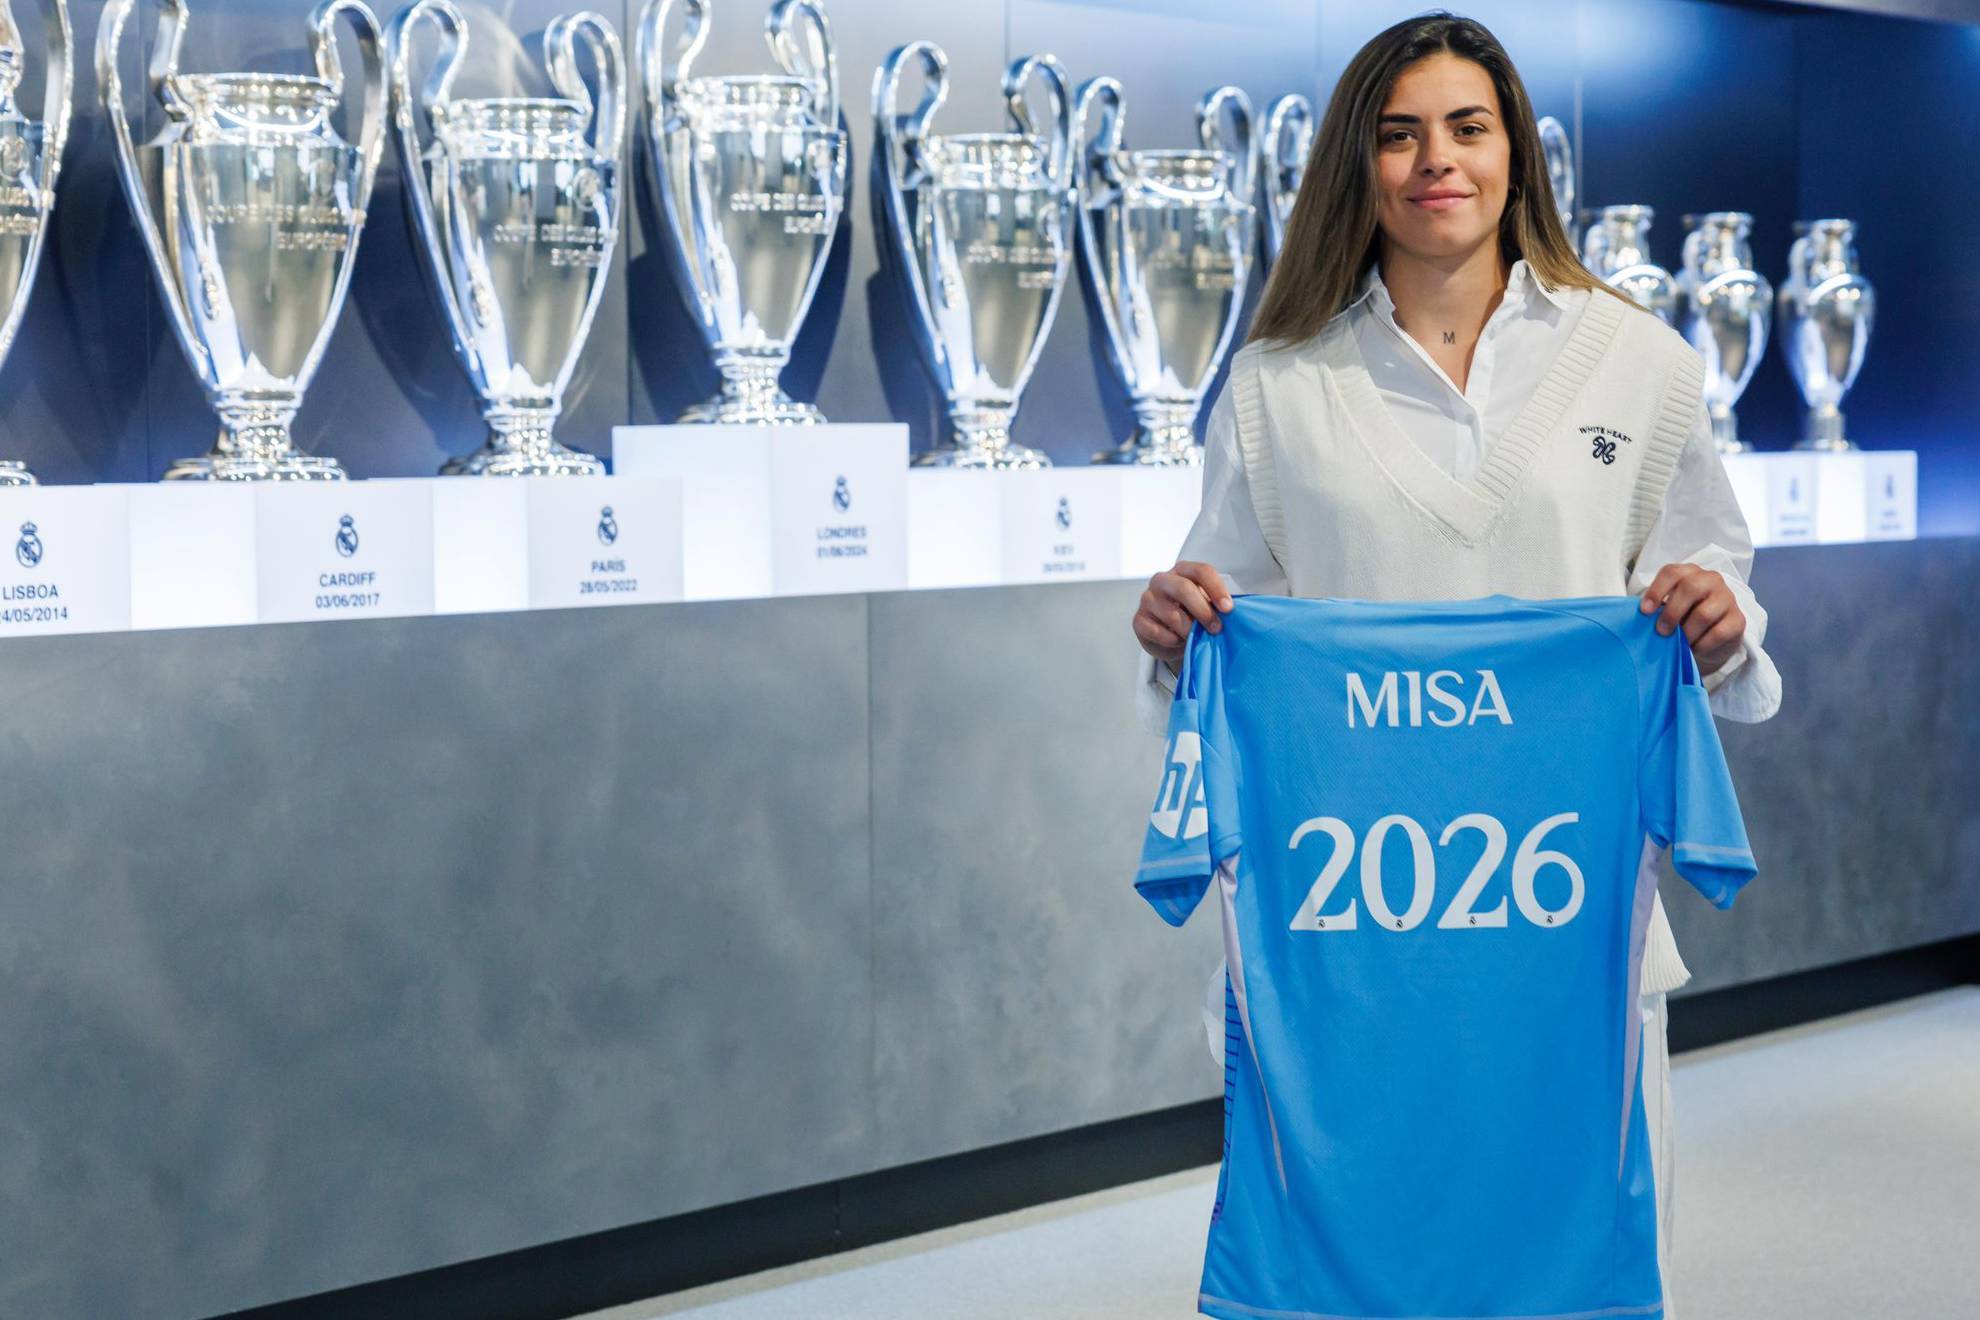 Misa Rodr�guez posa con la camiseta y la fecha de su ampliaci�n de contrato / Real Madrid